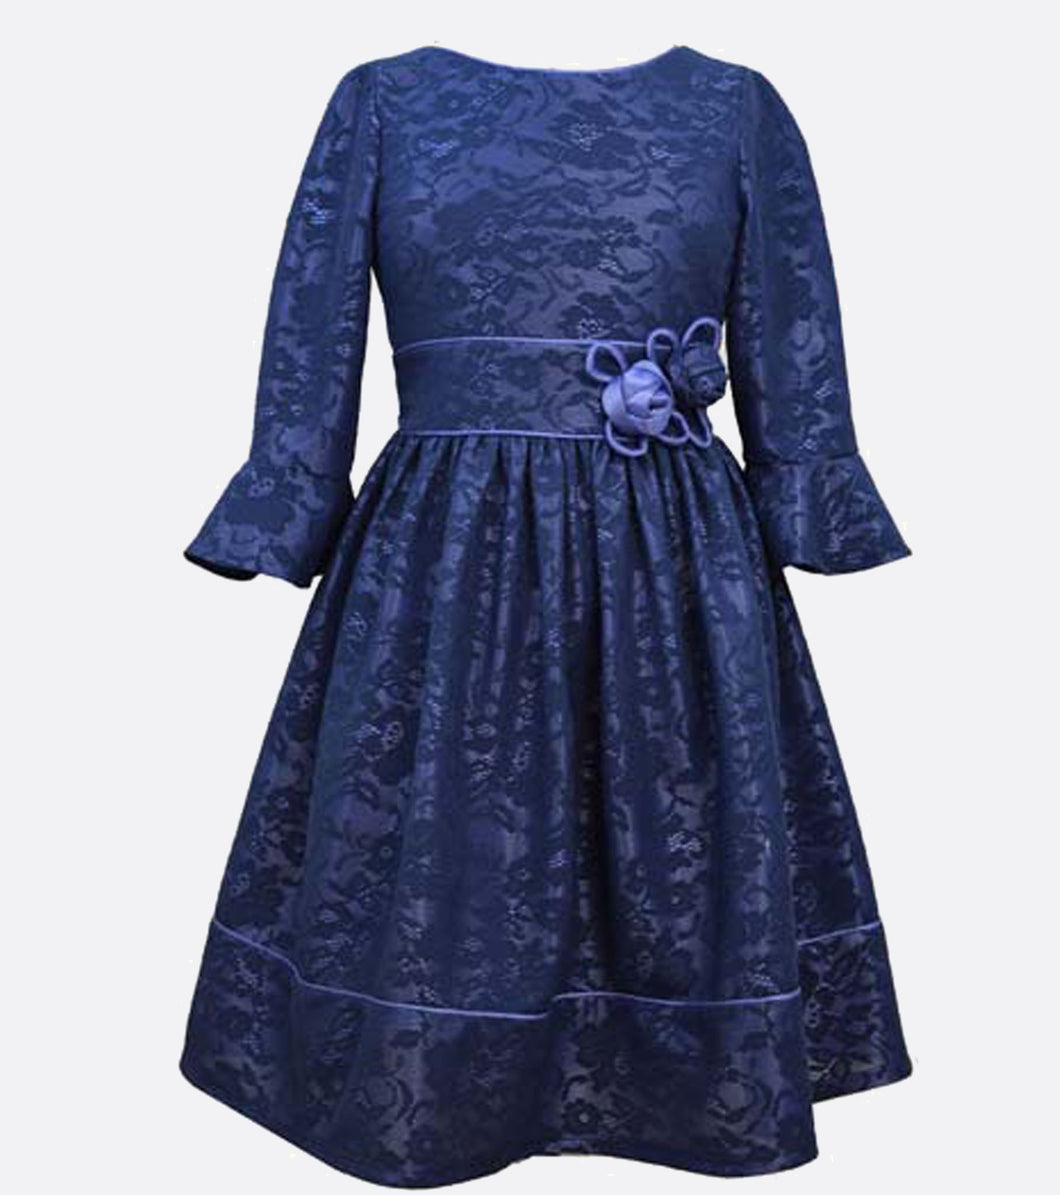 Bonnie Jean blue lace dress